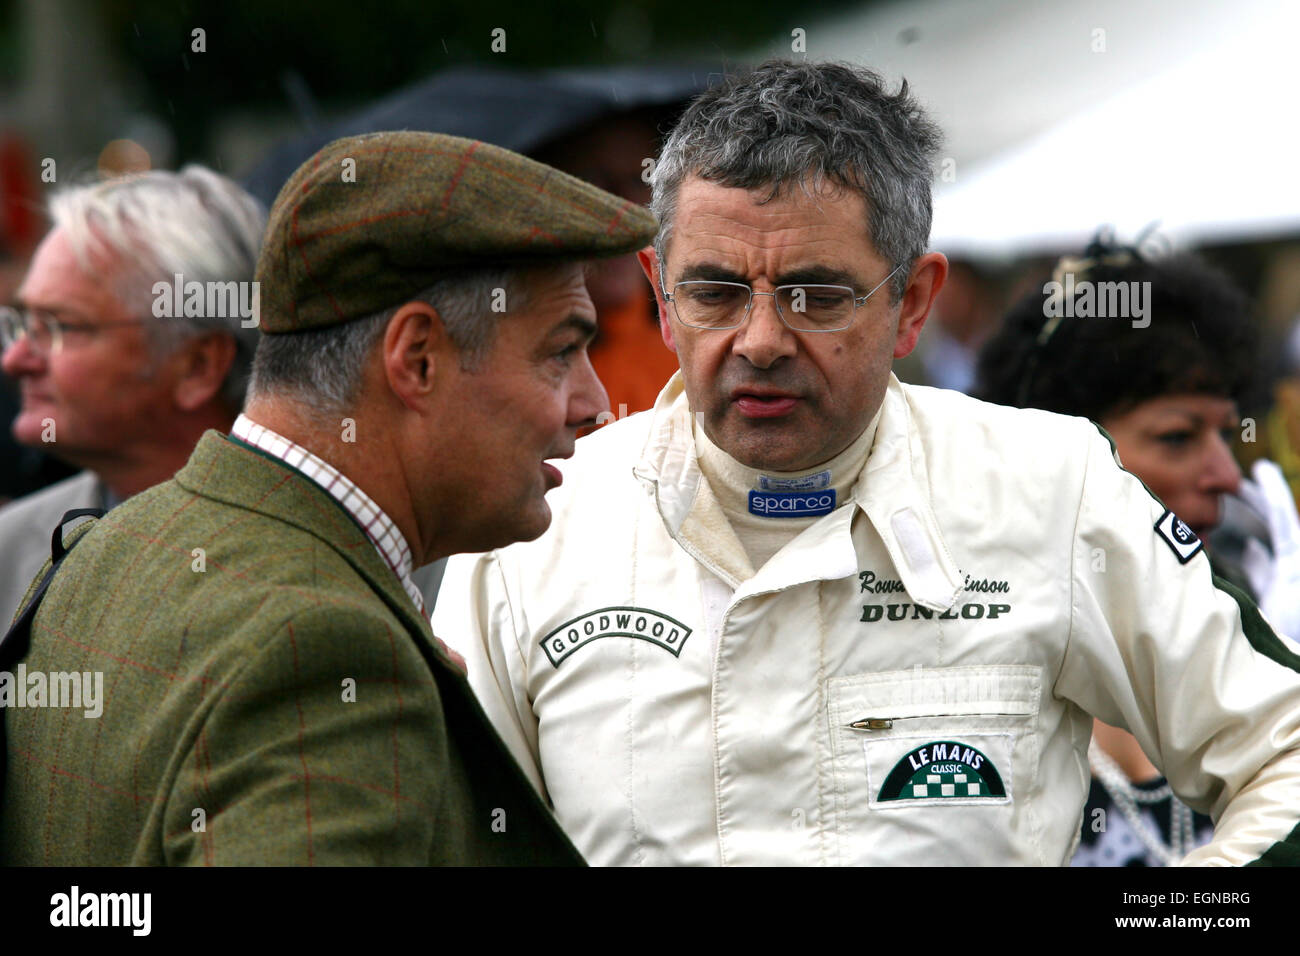 Actor Rowan Atkinson at the 2013 Goodwood Revival race meeting Stock Photo